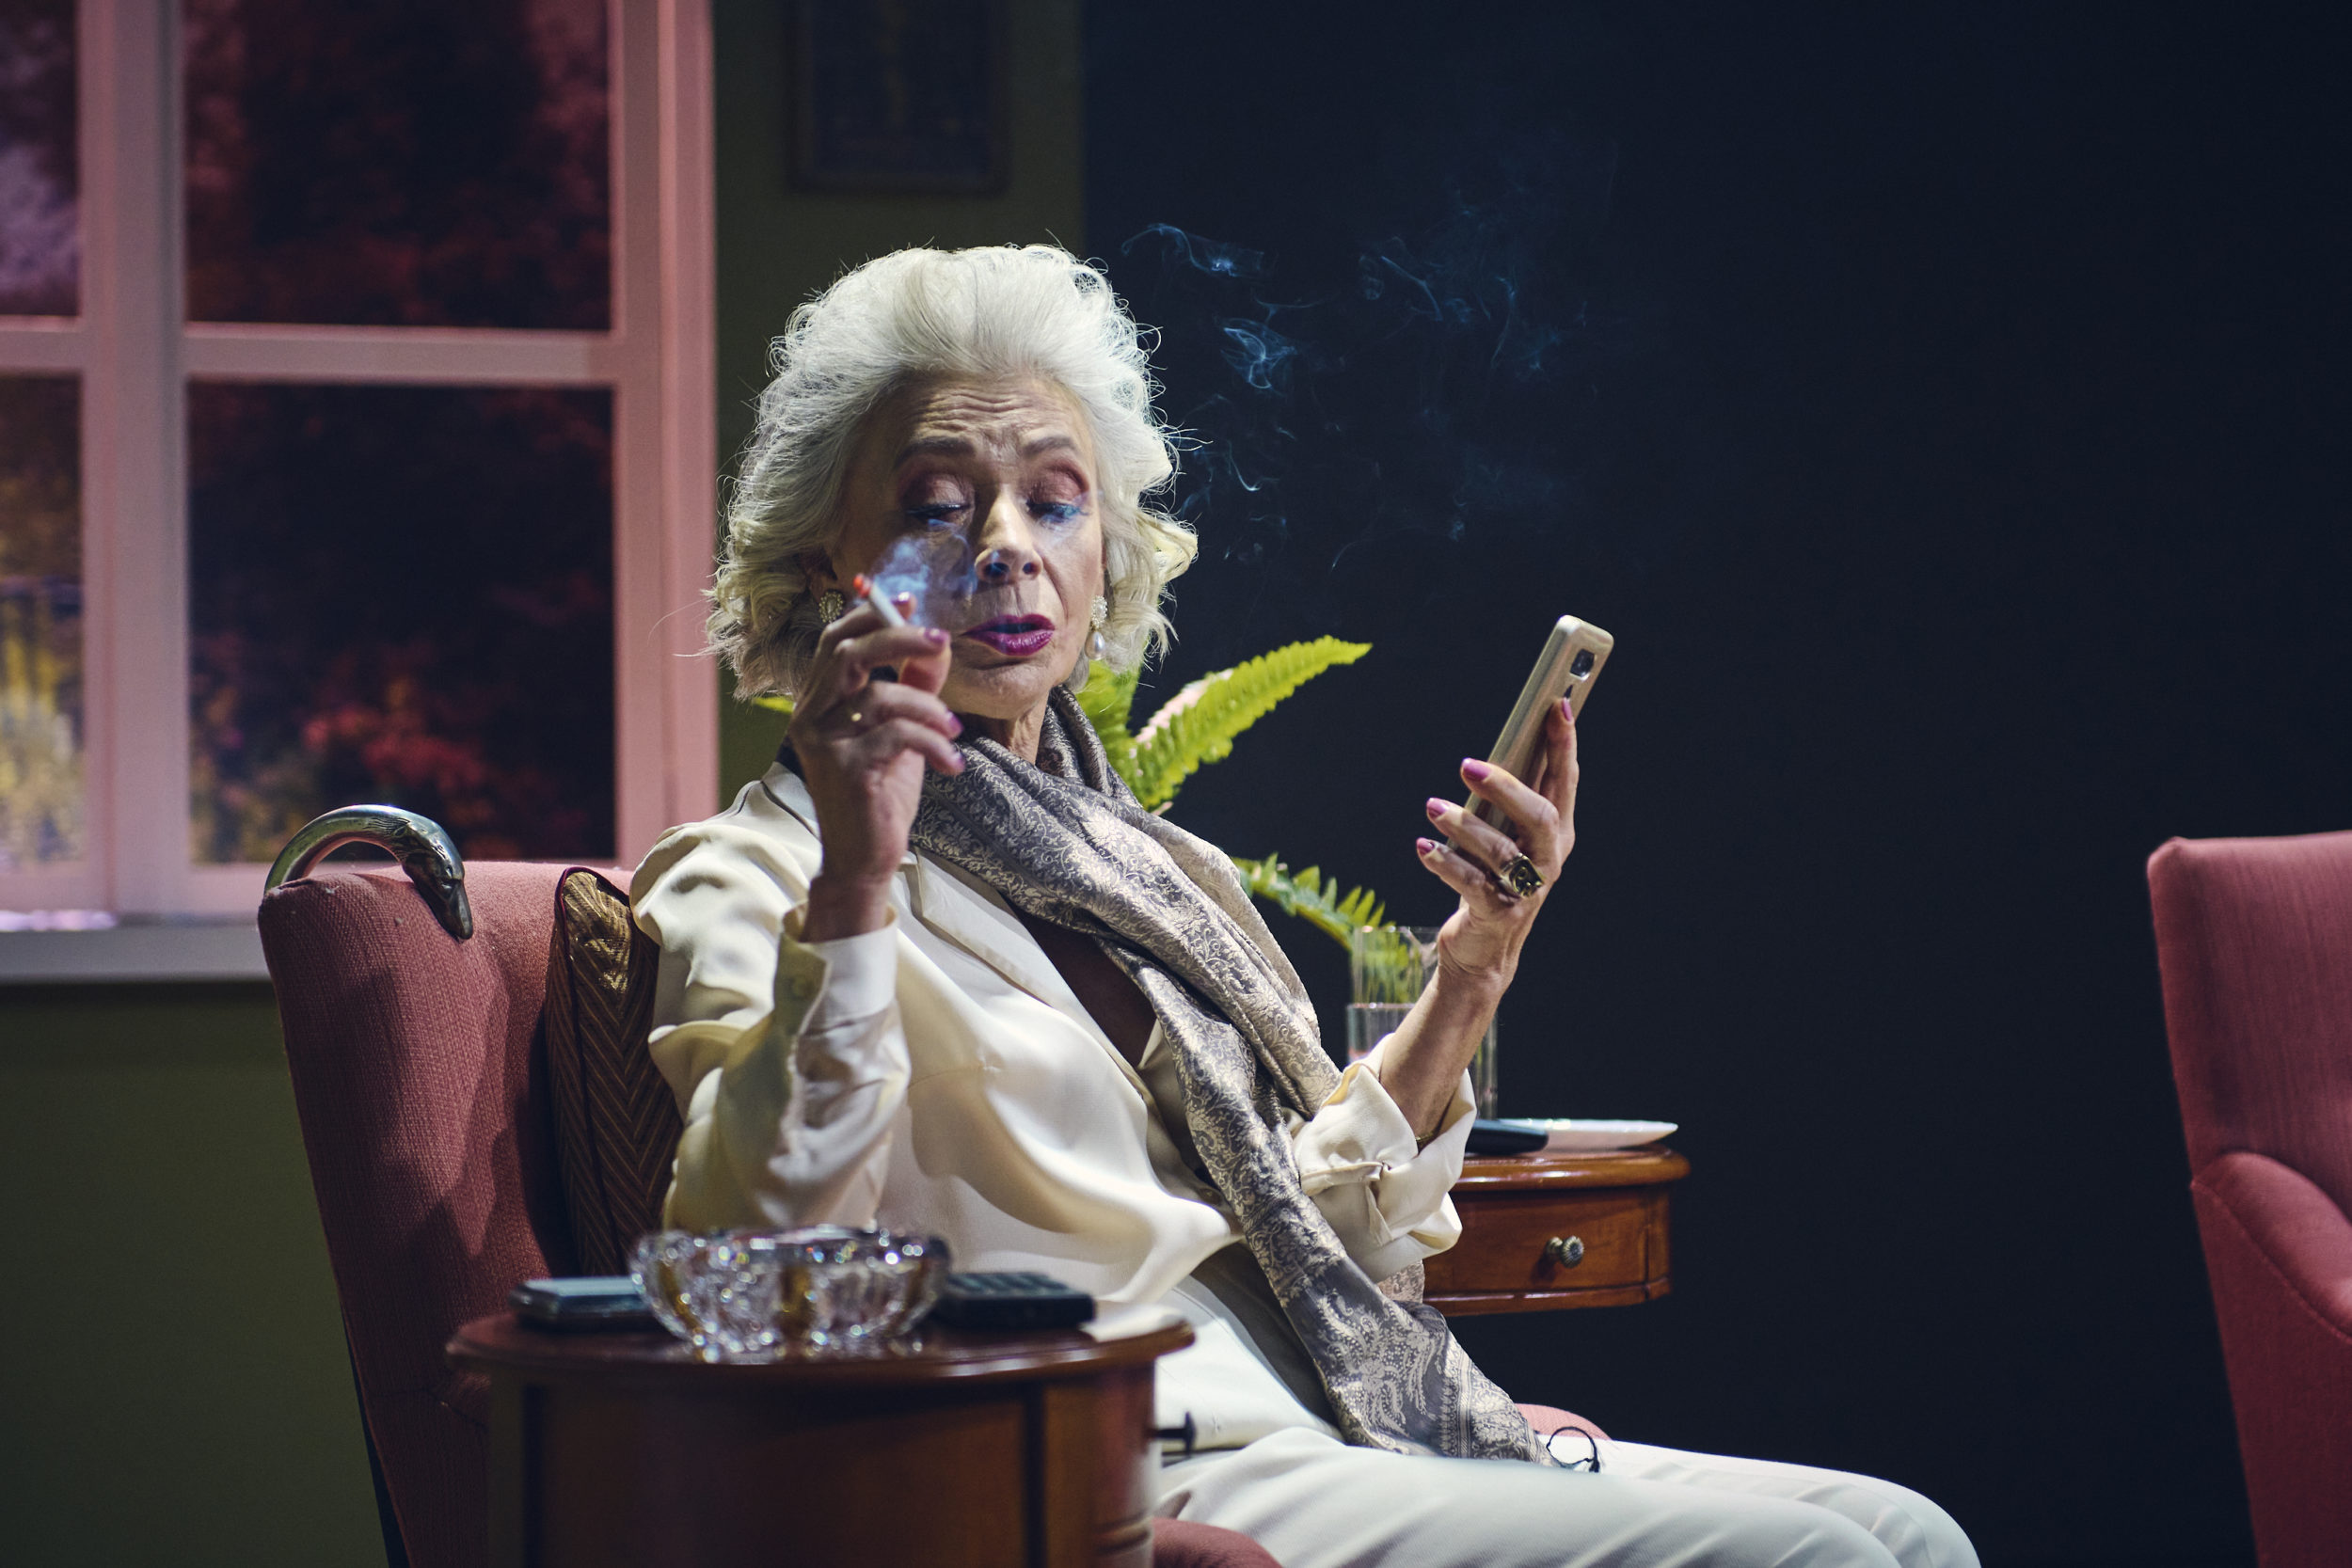 Starsza, elegancka kobieta siedzi w fotelu. W dłoni trzyma telefon komórkowy. Pali papierosa. W tle widać meble.